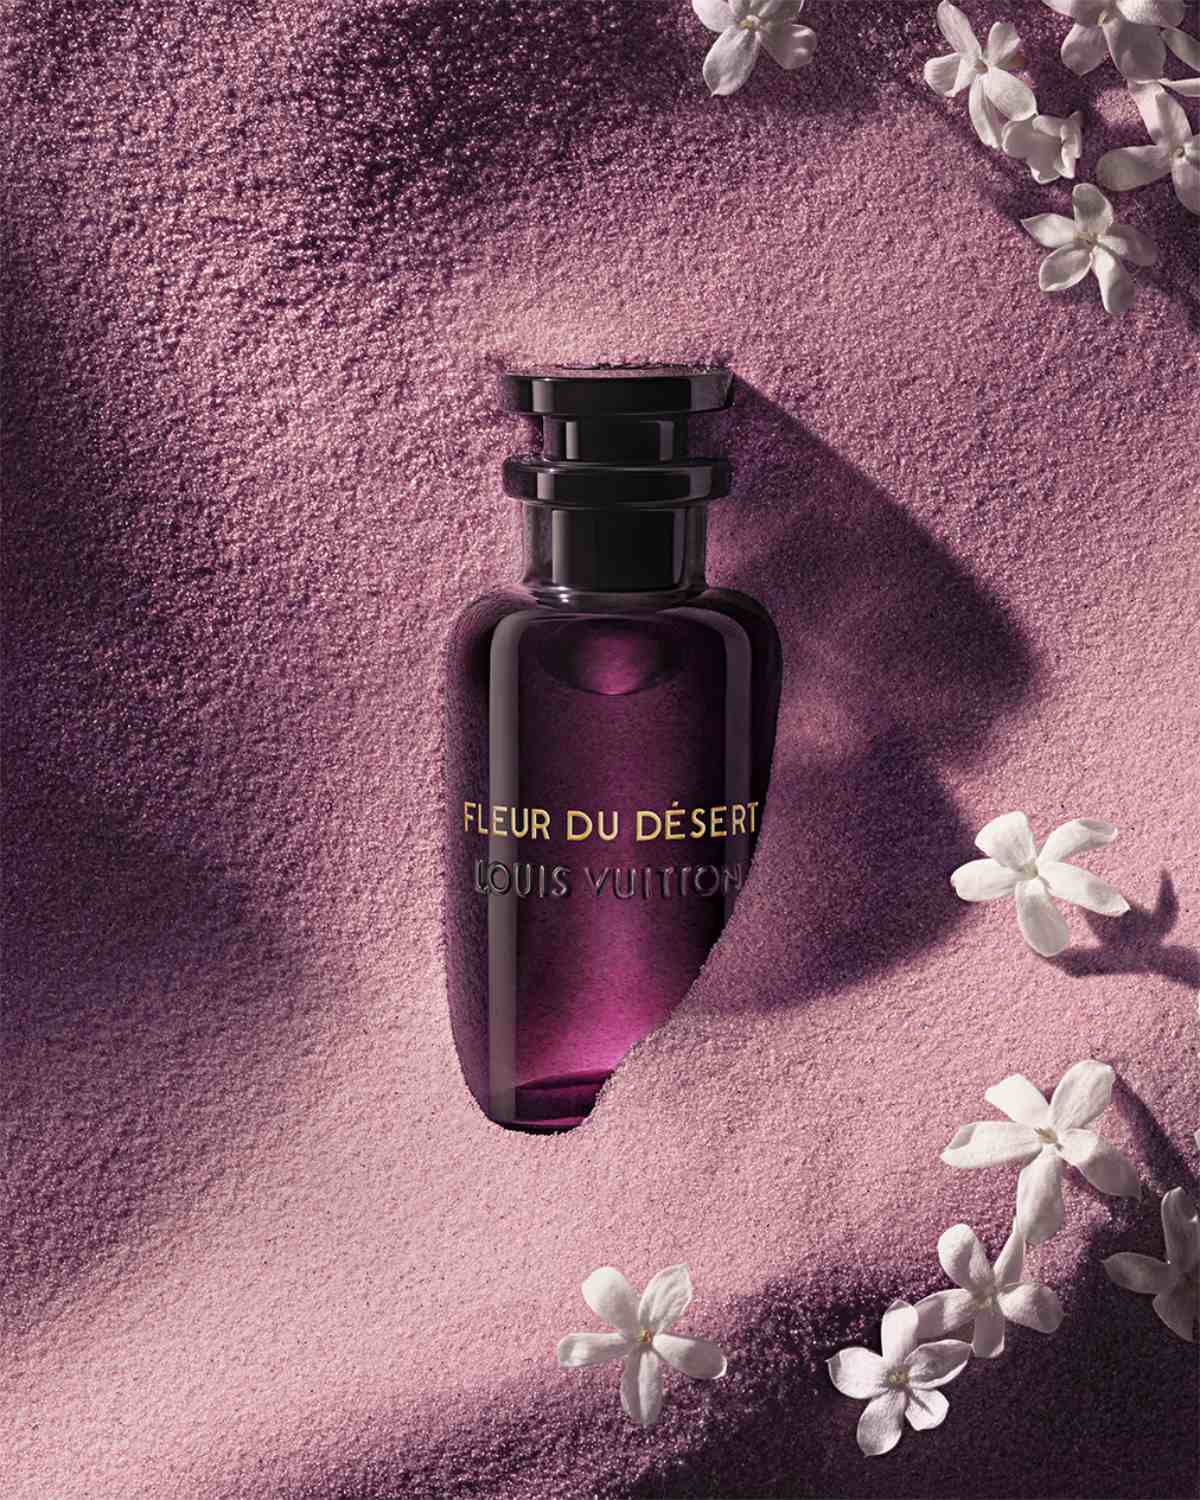 Les Parfums Louis Vuitton - Fleur du Désert